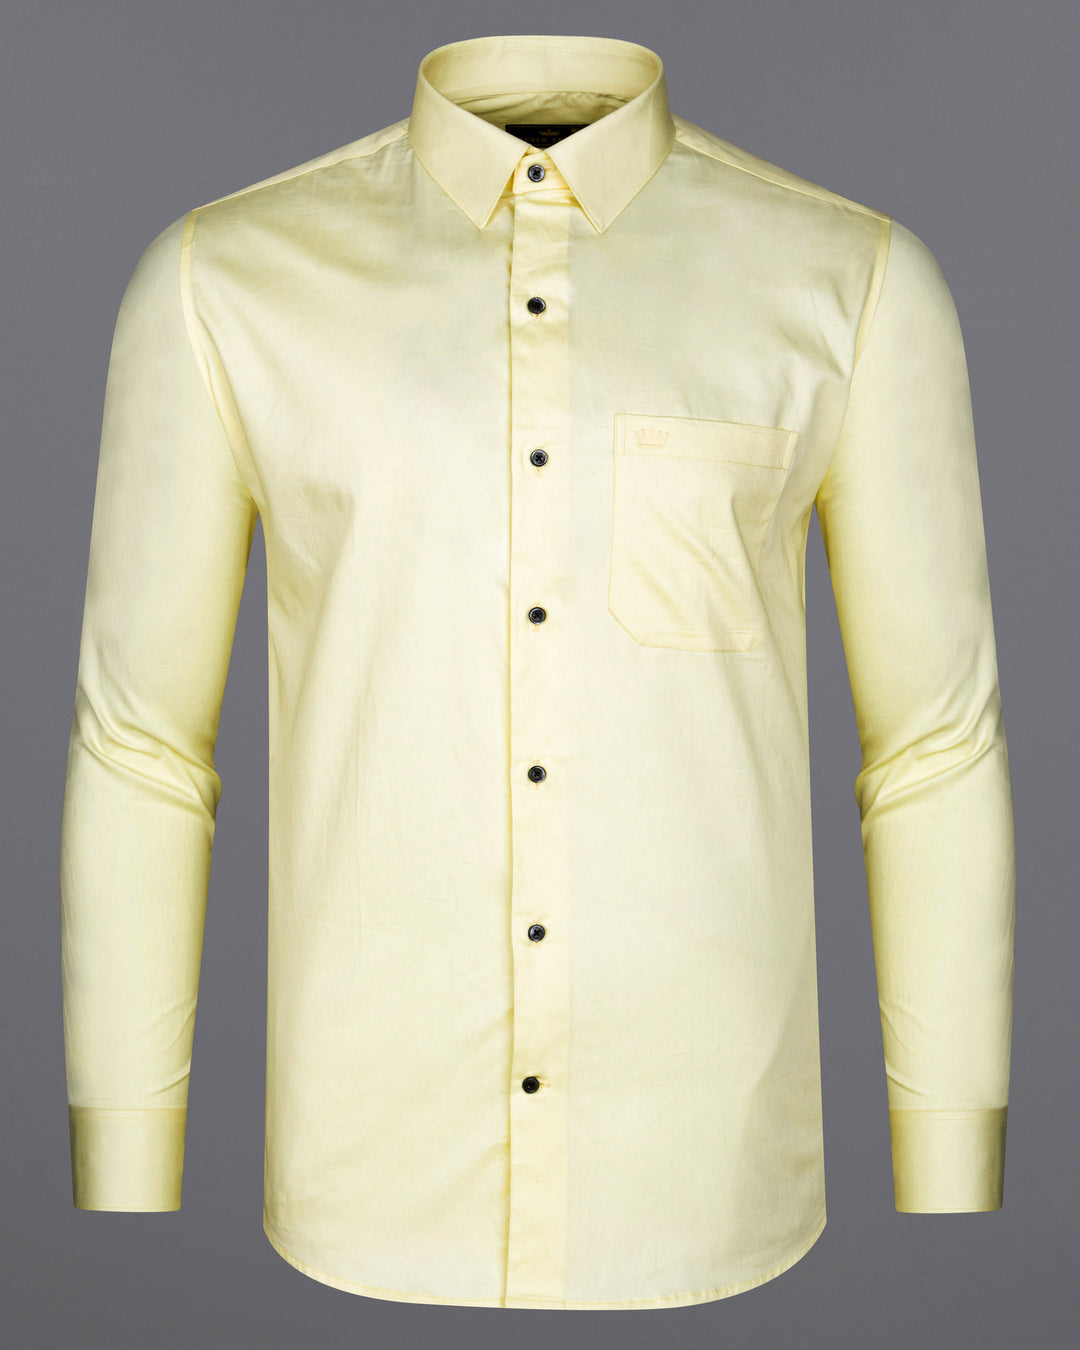 Yellow Shirt Matching Pant Ideas  Yellow Shirts Combination Pants